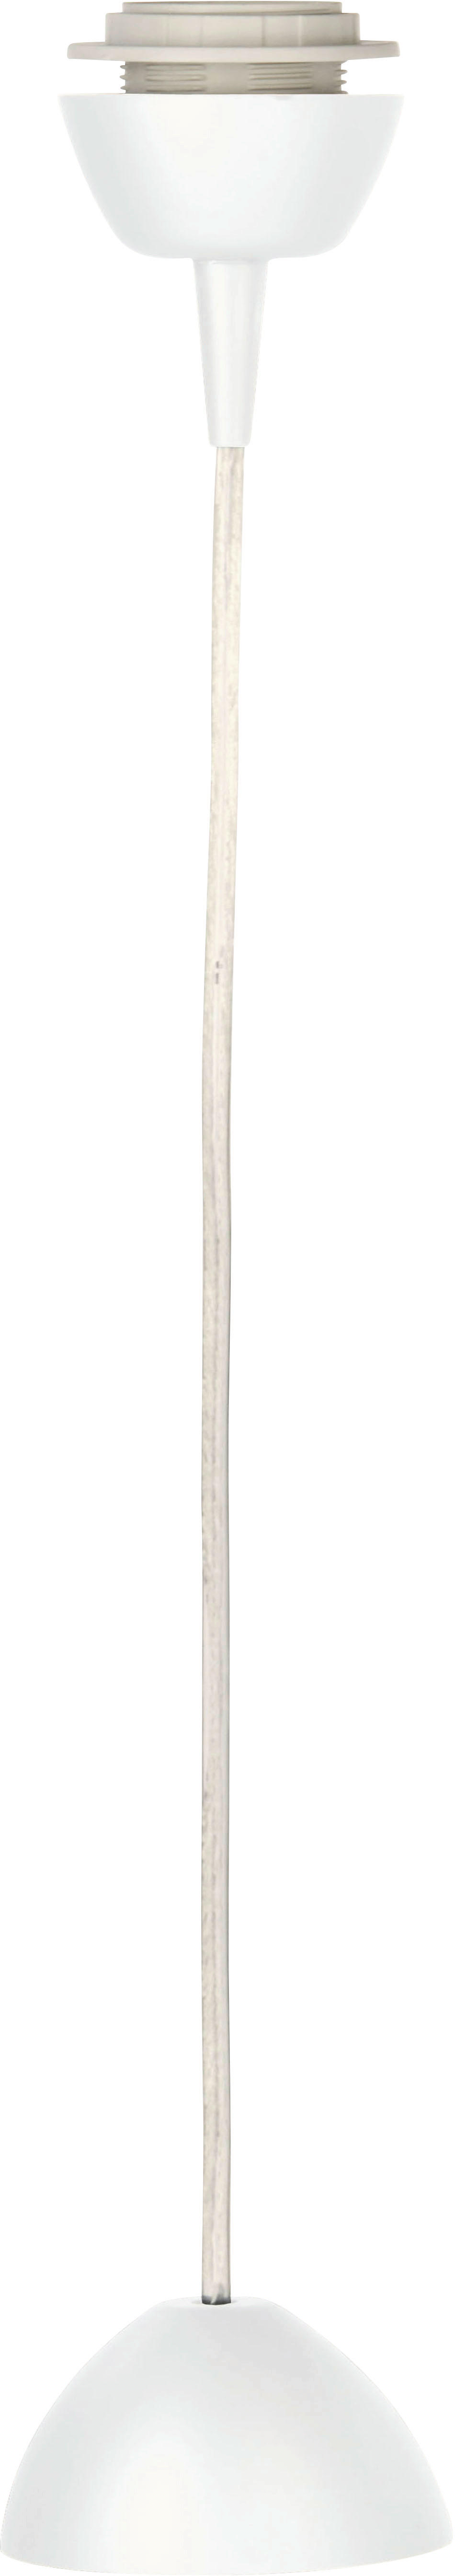 Homezone ZÁVĚS PRO SVÍTIDLA, 150 cm - bílá